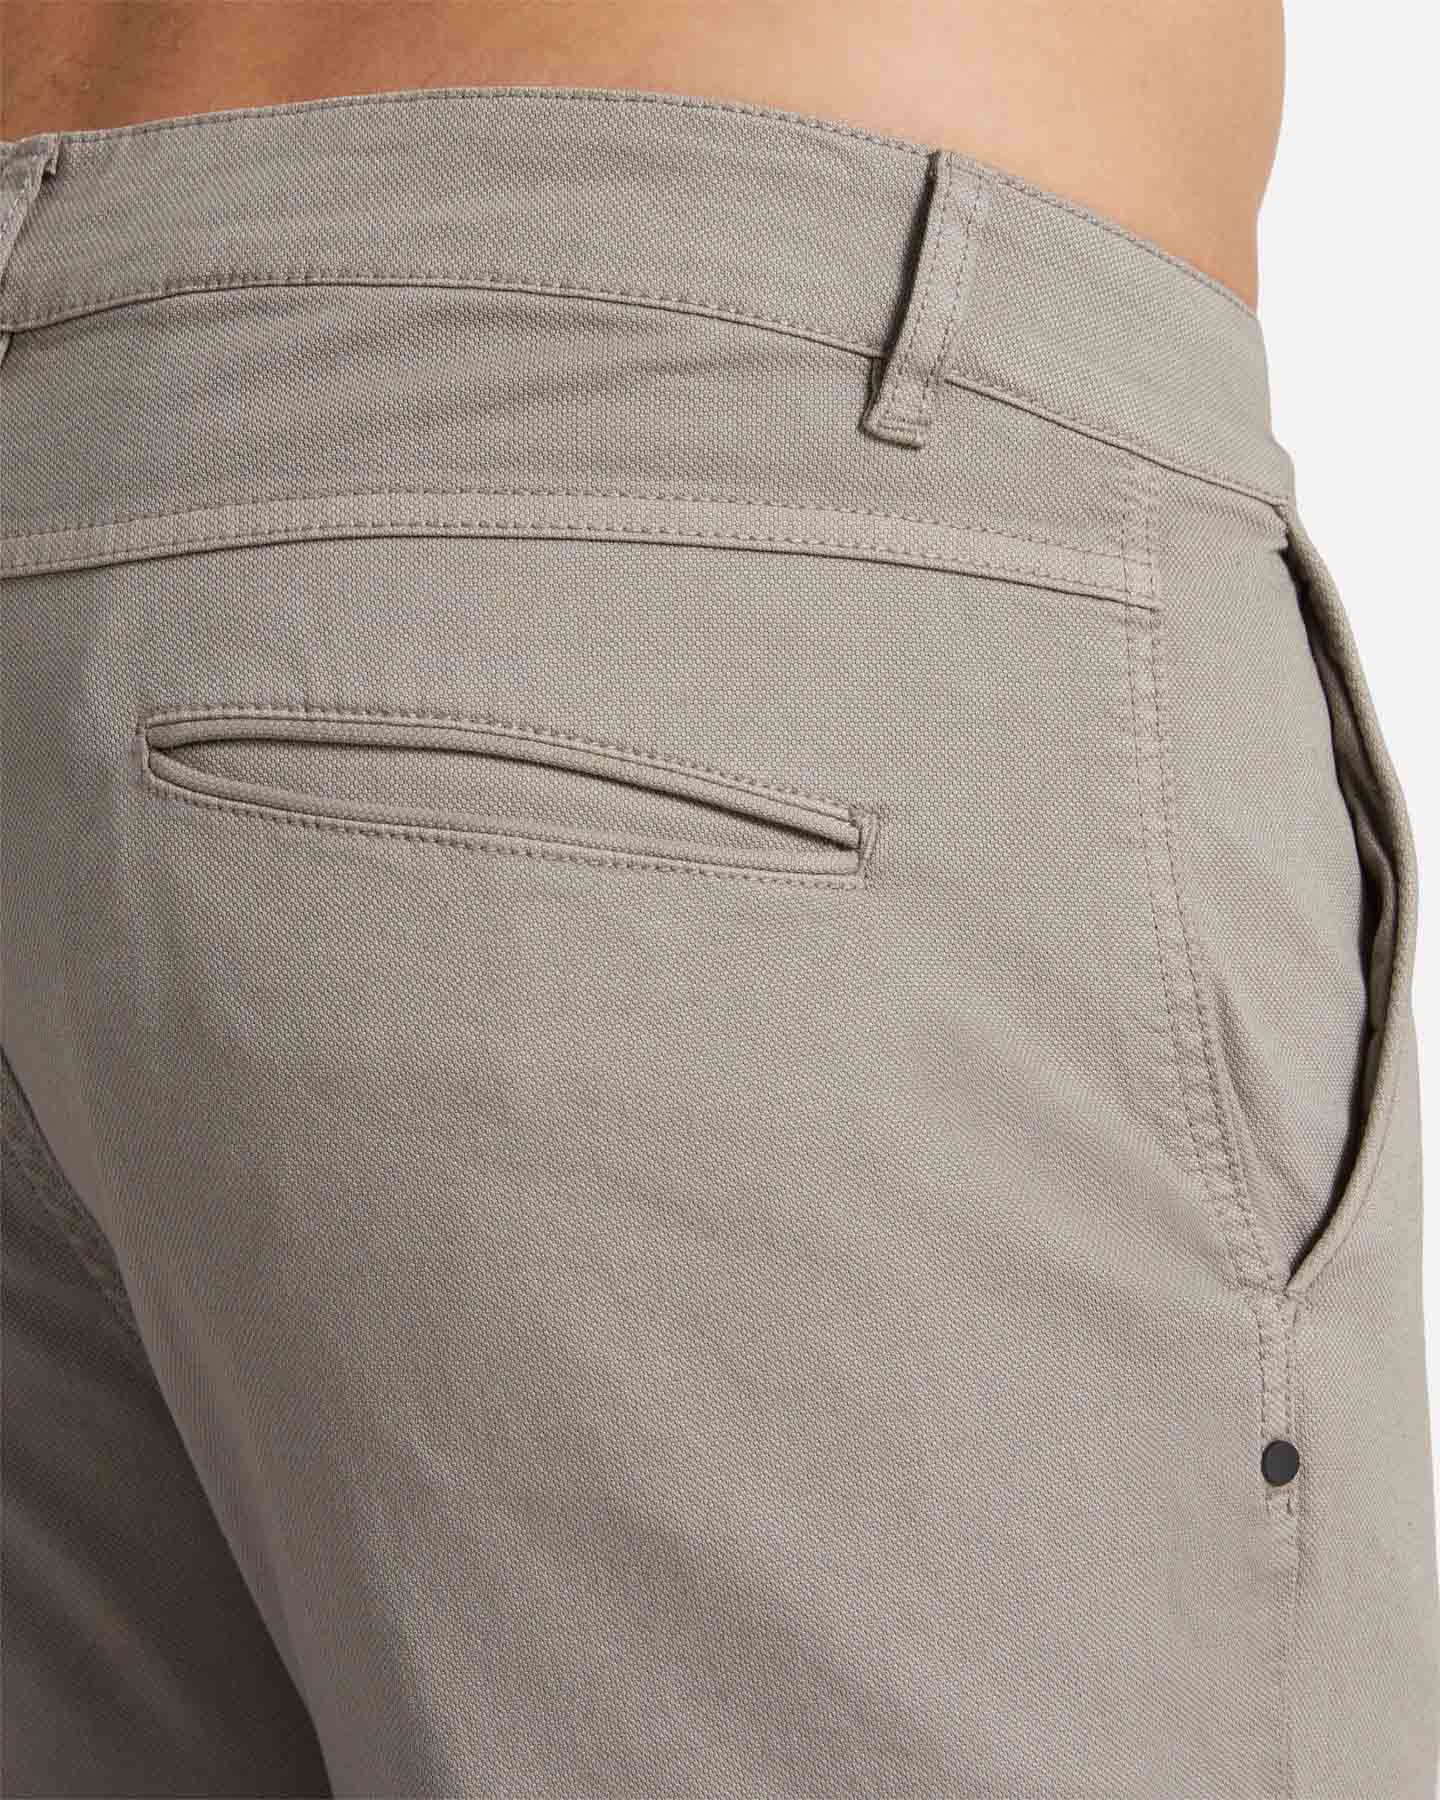  Pantalone BEST COMPANY COTTON LINE M S4131673|011|46 scatto 3